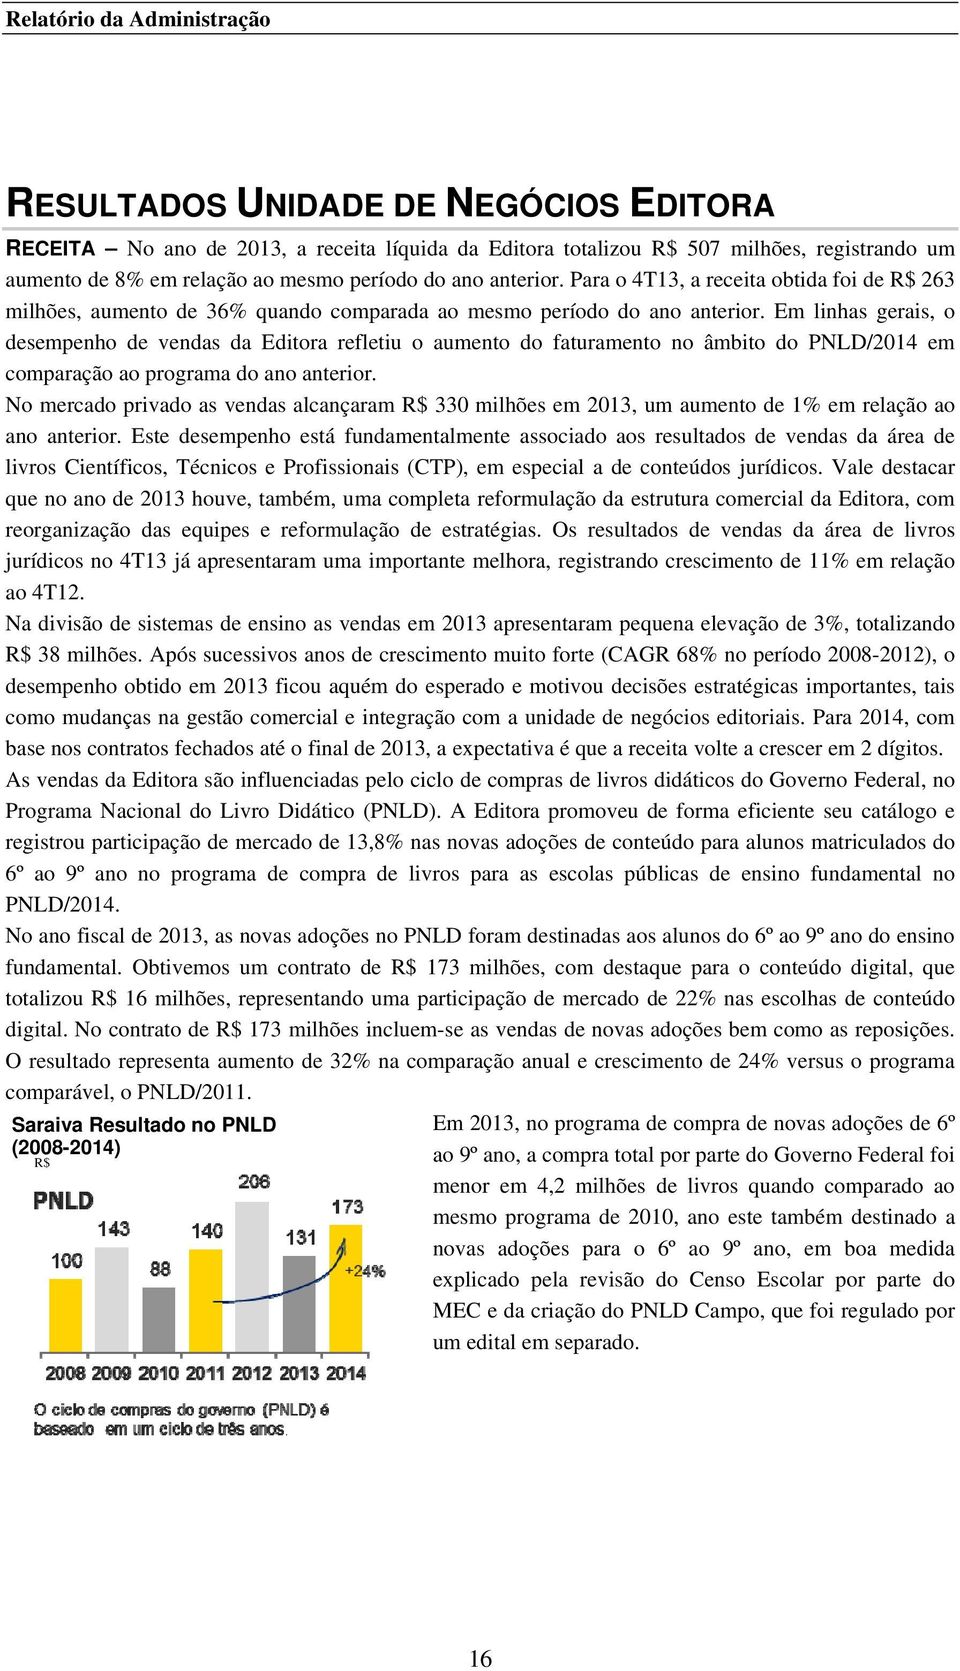 Em linhas gerais, o desempenho de vendas da Editora refletiu o aumento do faturamento no âmbito do PNLD/2014 em comparação ao programa do ano anterior.